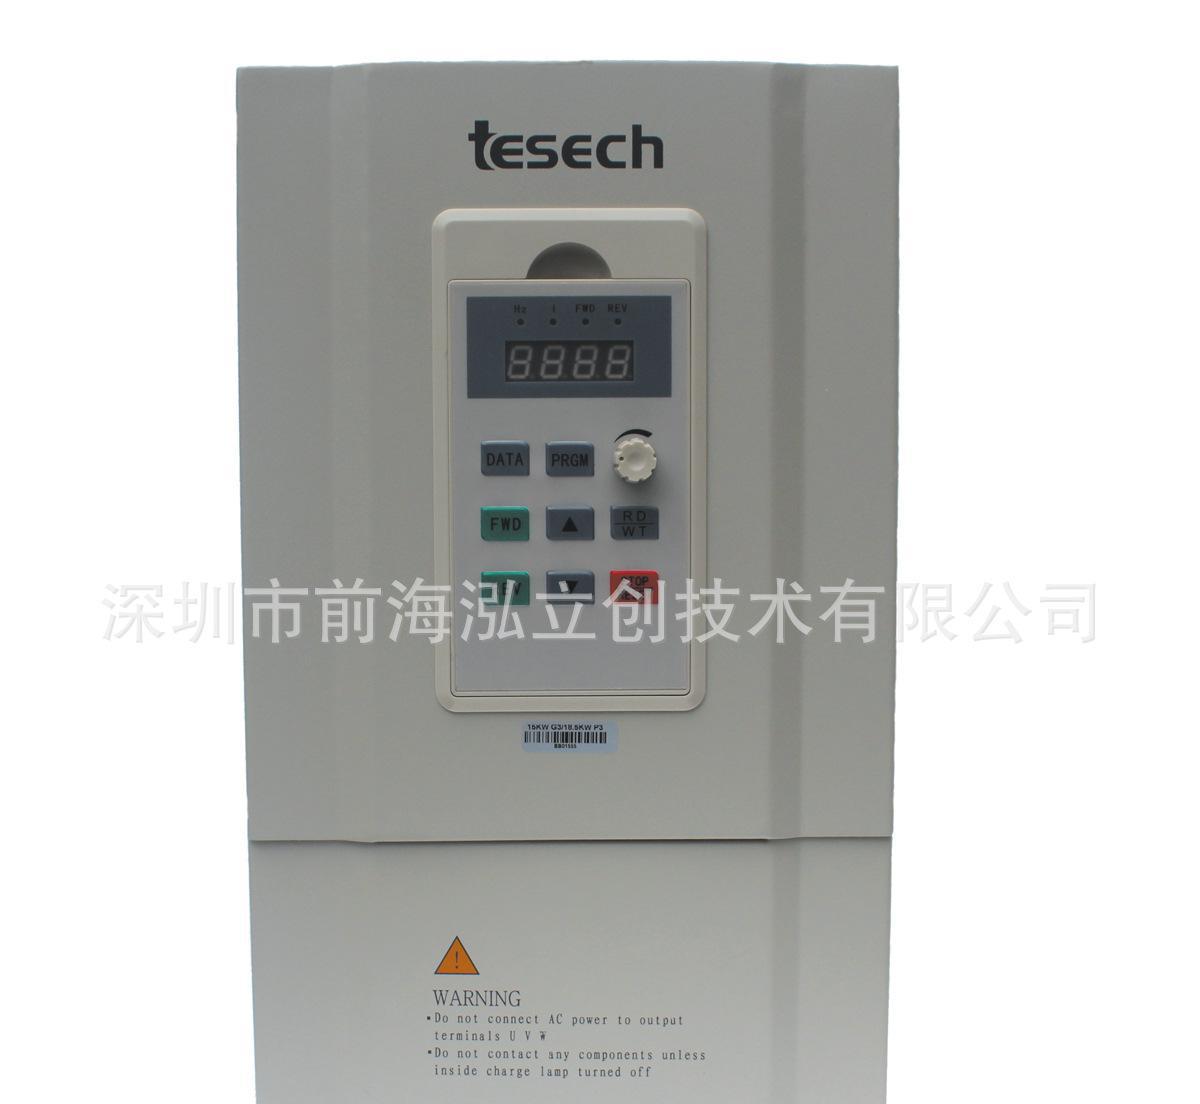 台湾变频器,台湾tesech变频器,tesech变频器,特价台湾TESECH变频?